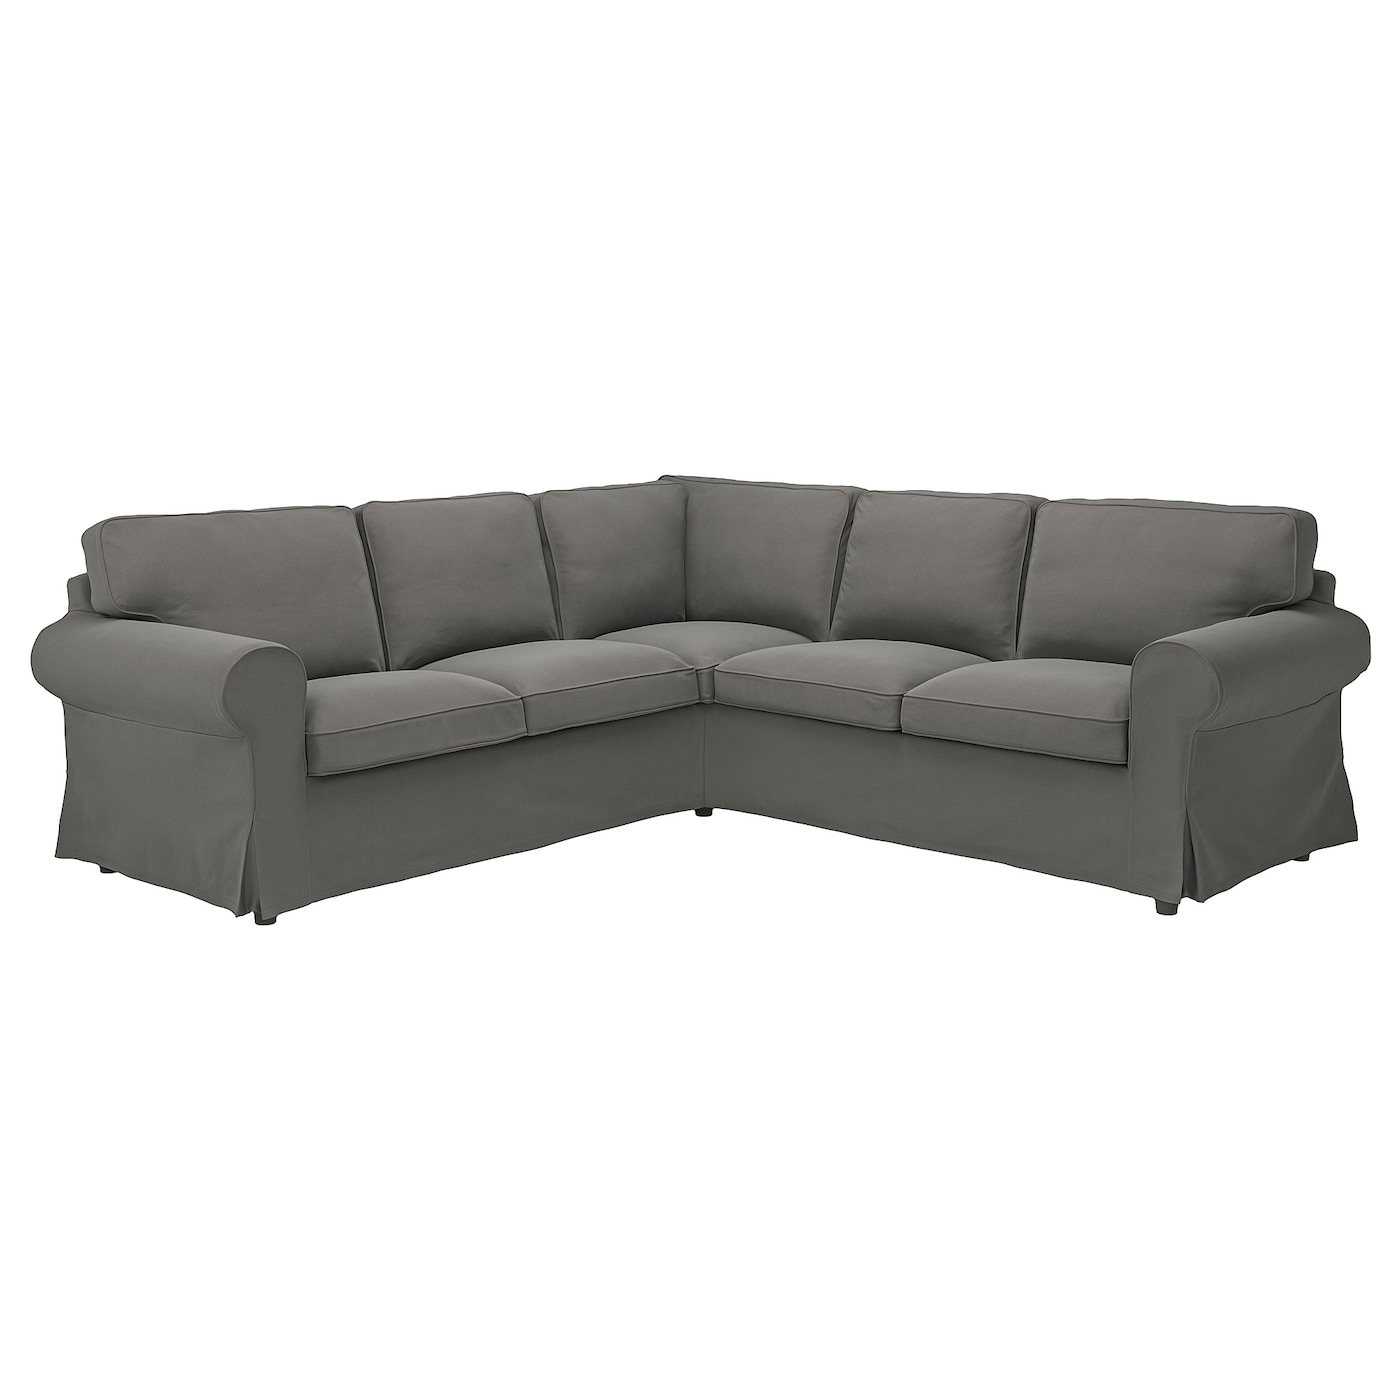 4-местный угловой диван - IKEA EKTORP, 88x243см, серый, ЭКТОРП ИКЕА